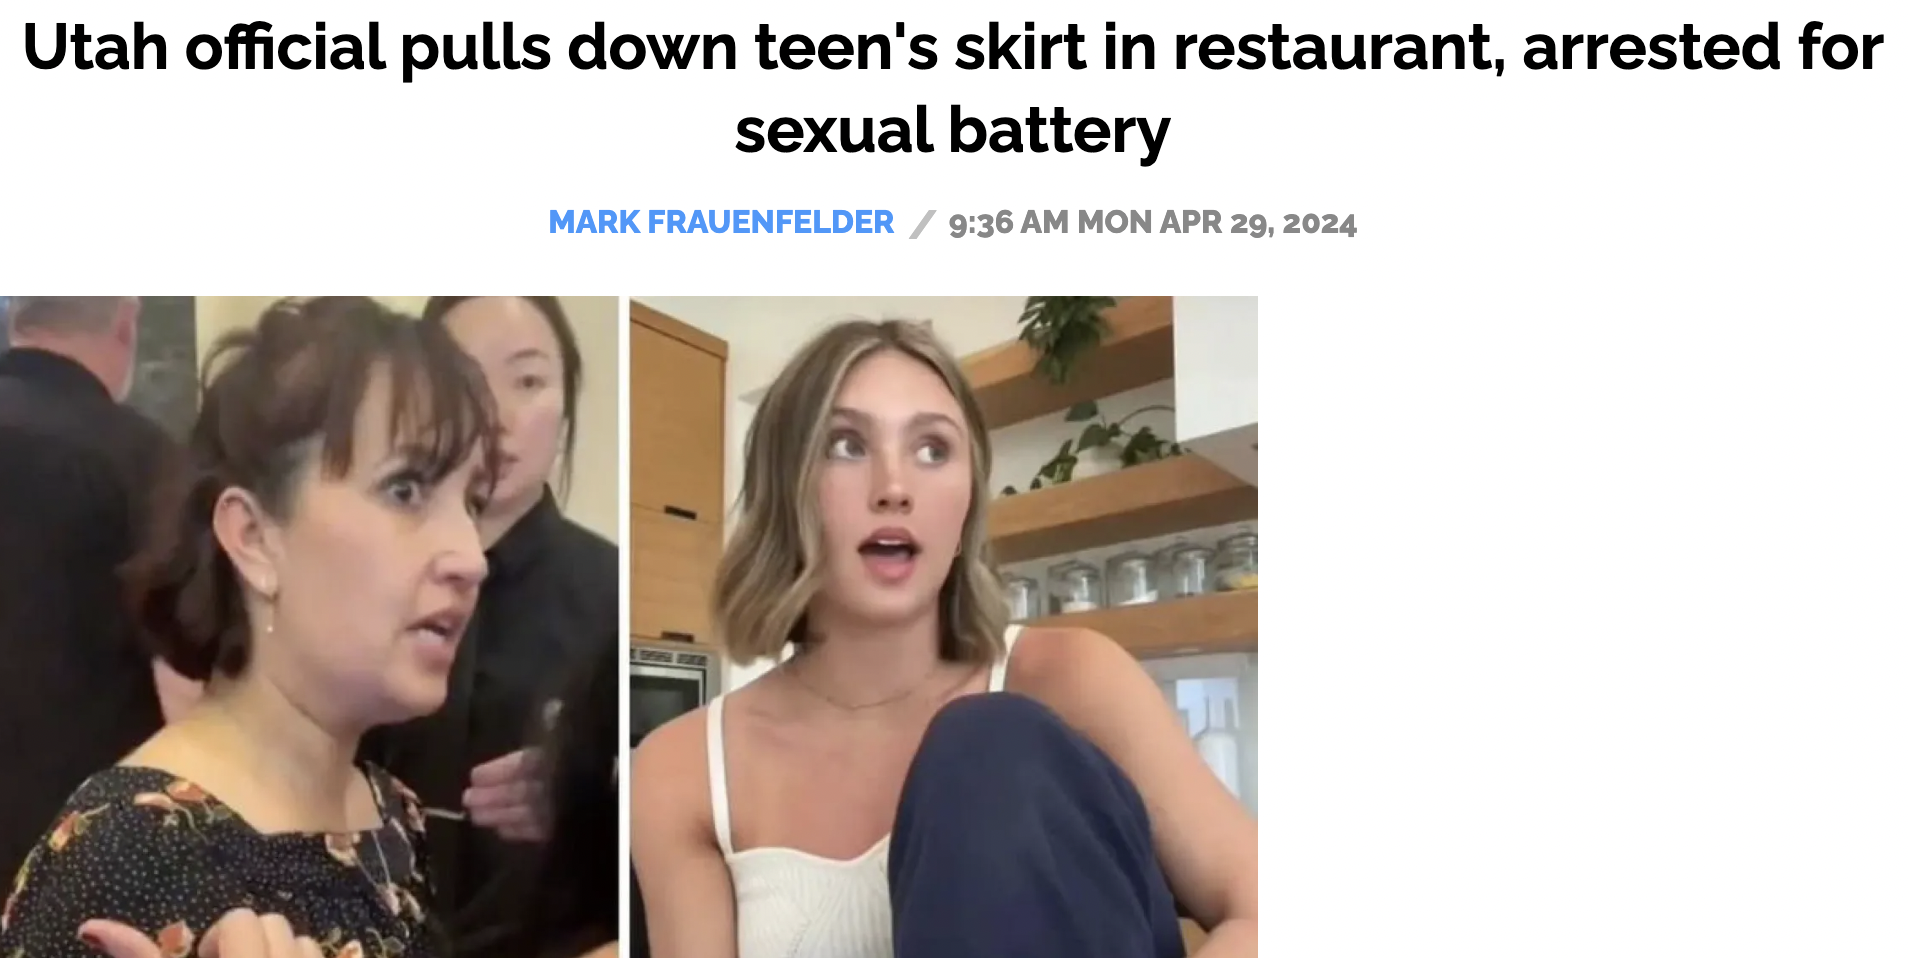 ida ann lorenzo utah - Utah official pulls down teen's skirt in restaurant, arrested for sexual battery Mark Frauenfelder Mon